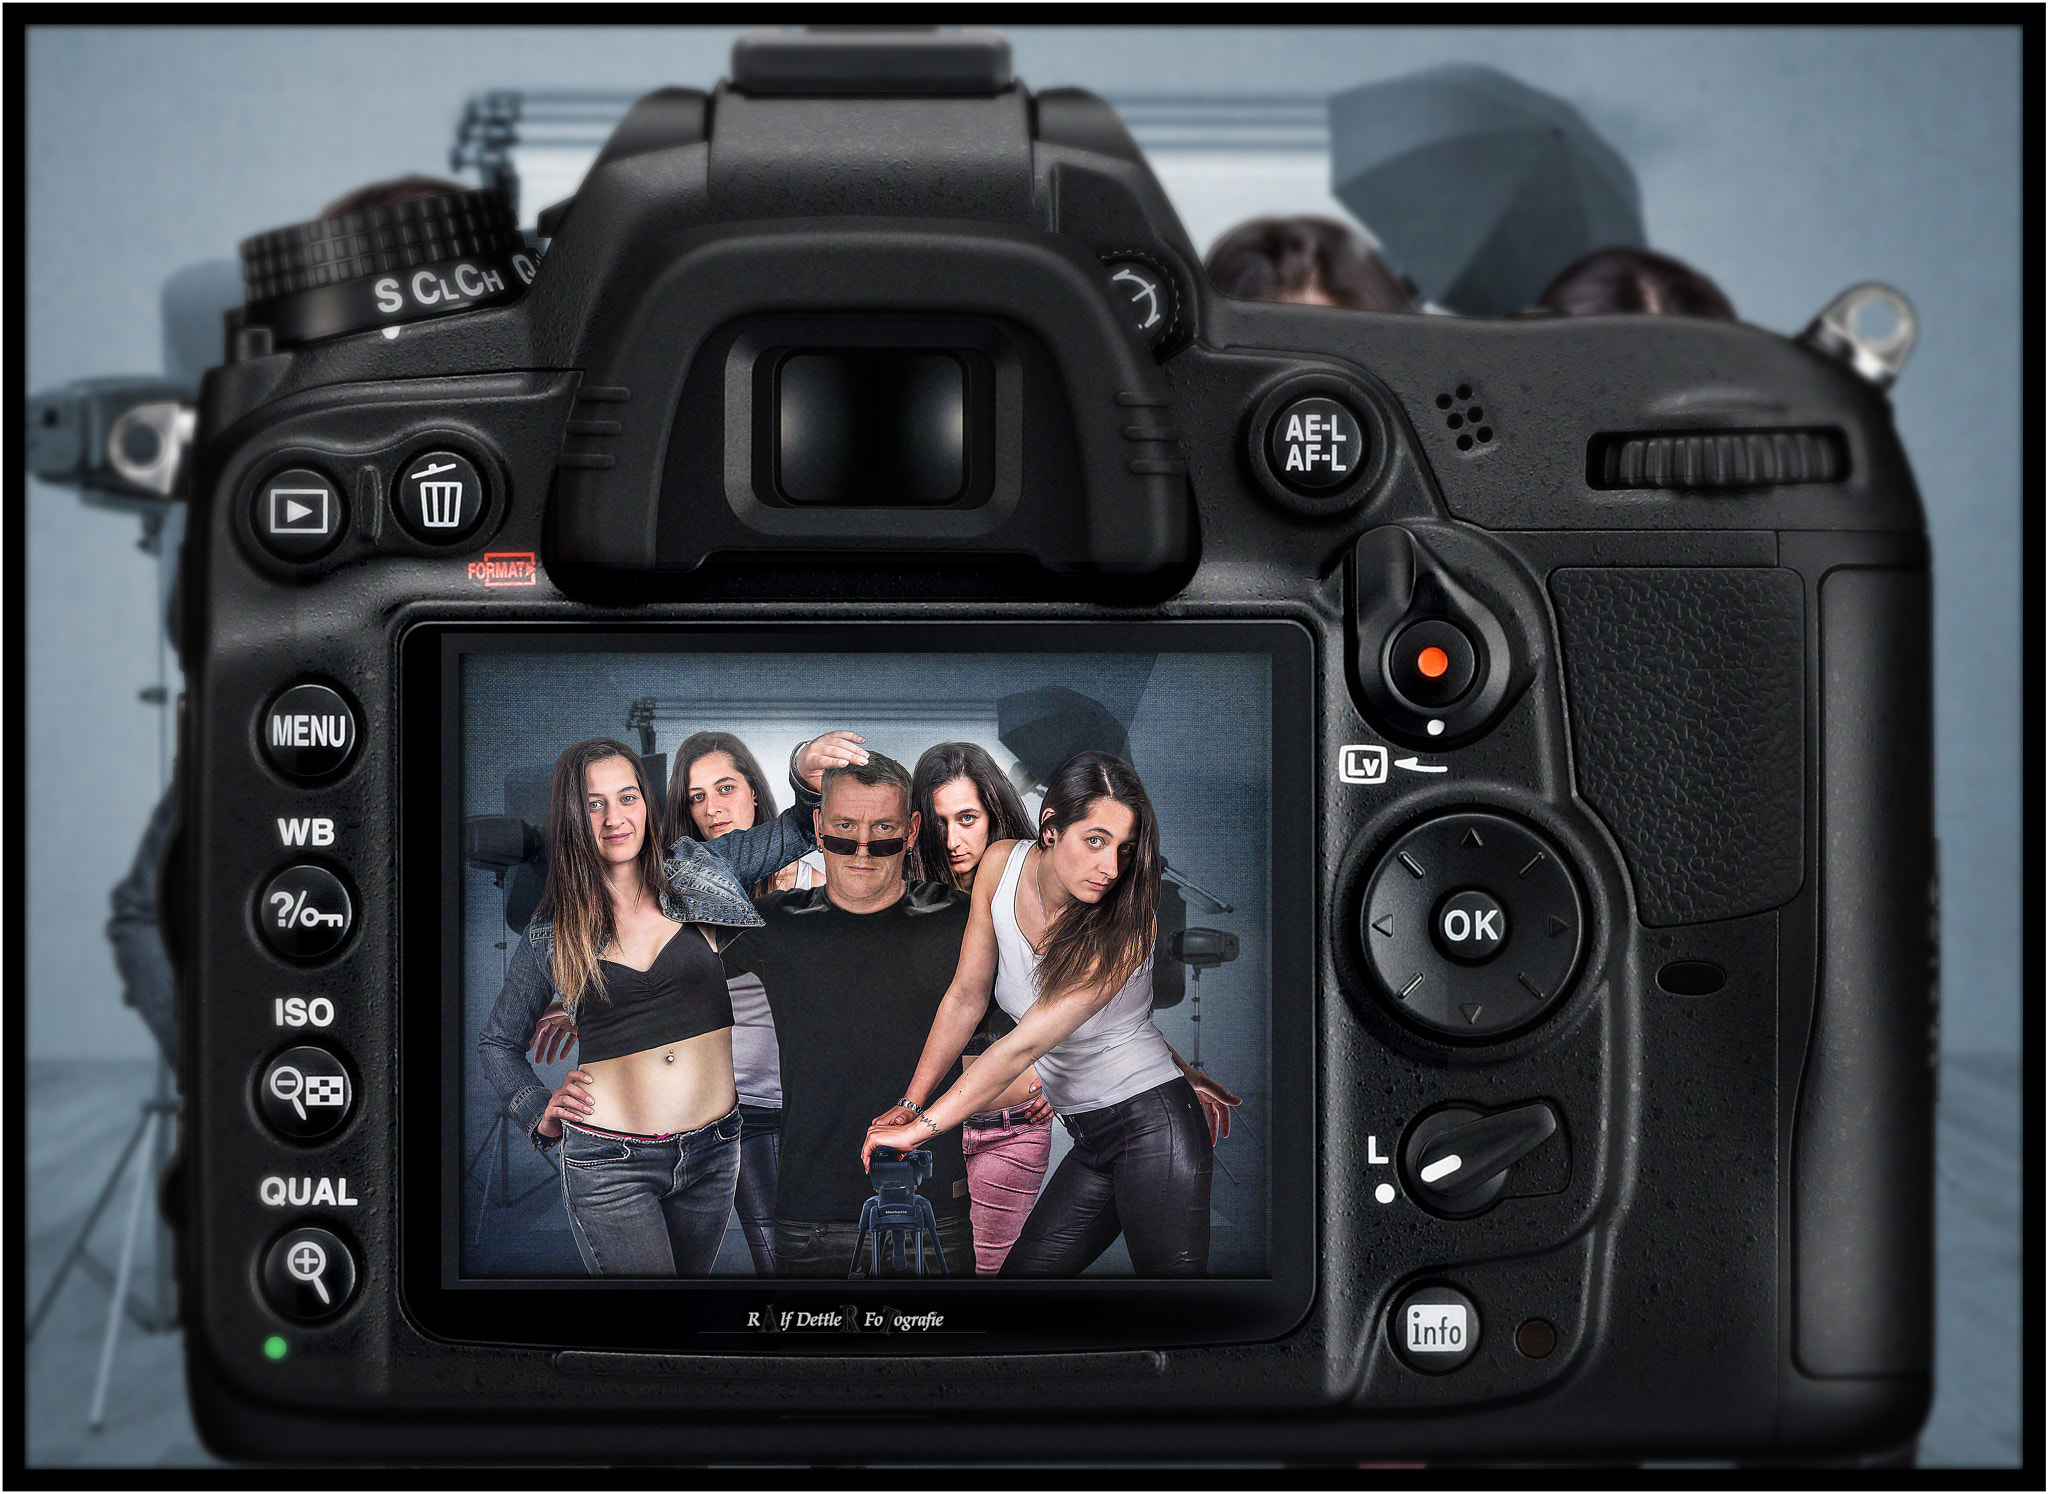 Canon EOS 1100D (EOS Rebel T3 / EOS Kiss X50) sample photo. Ablichten photography